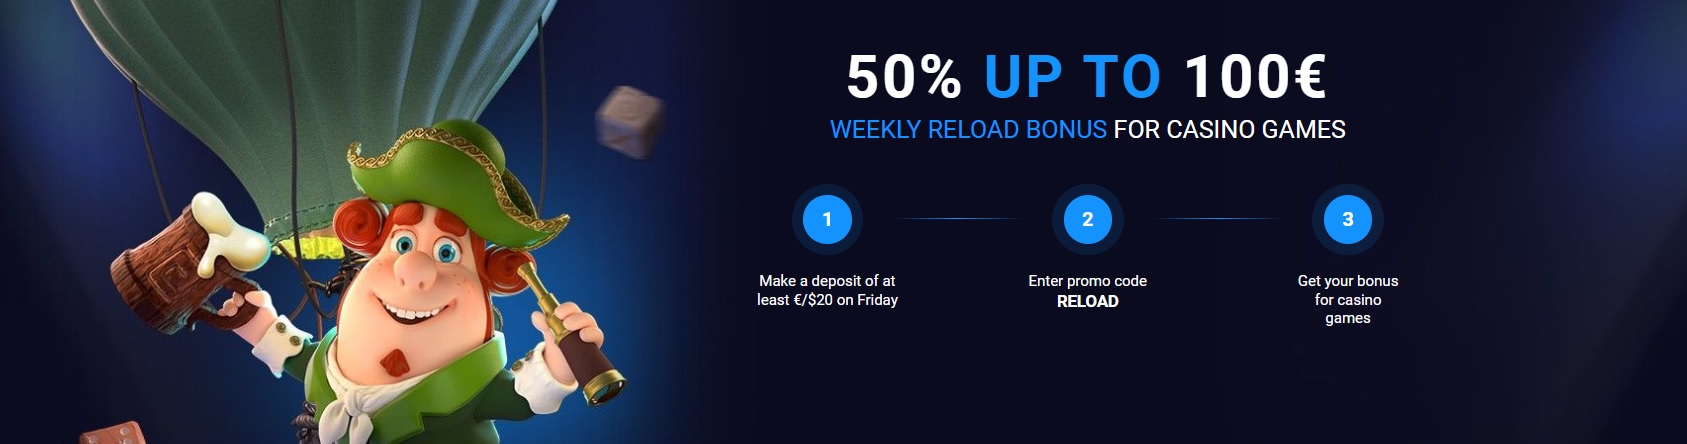 20BET weekly reload bonus